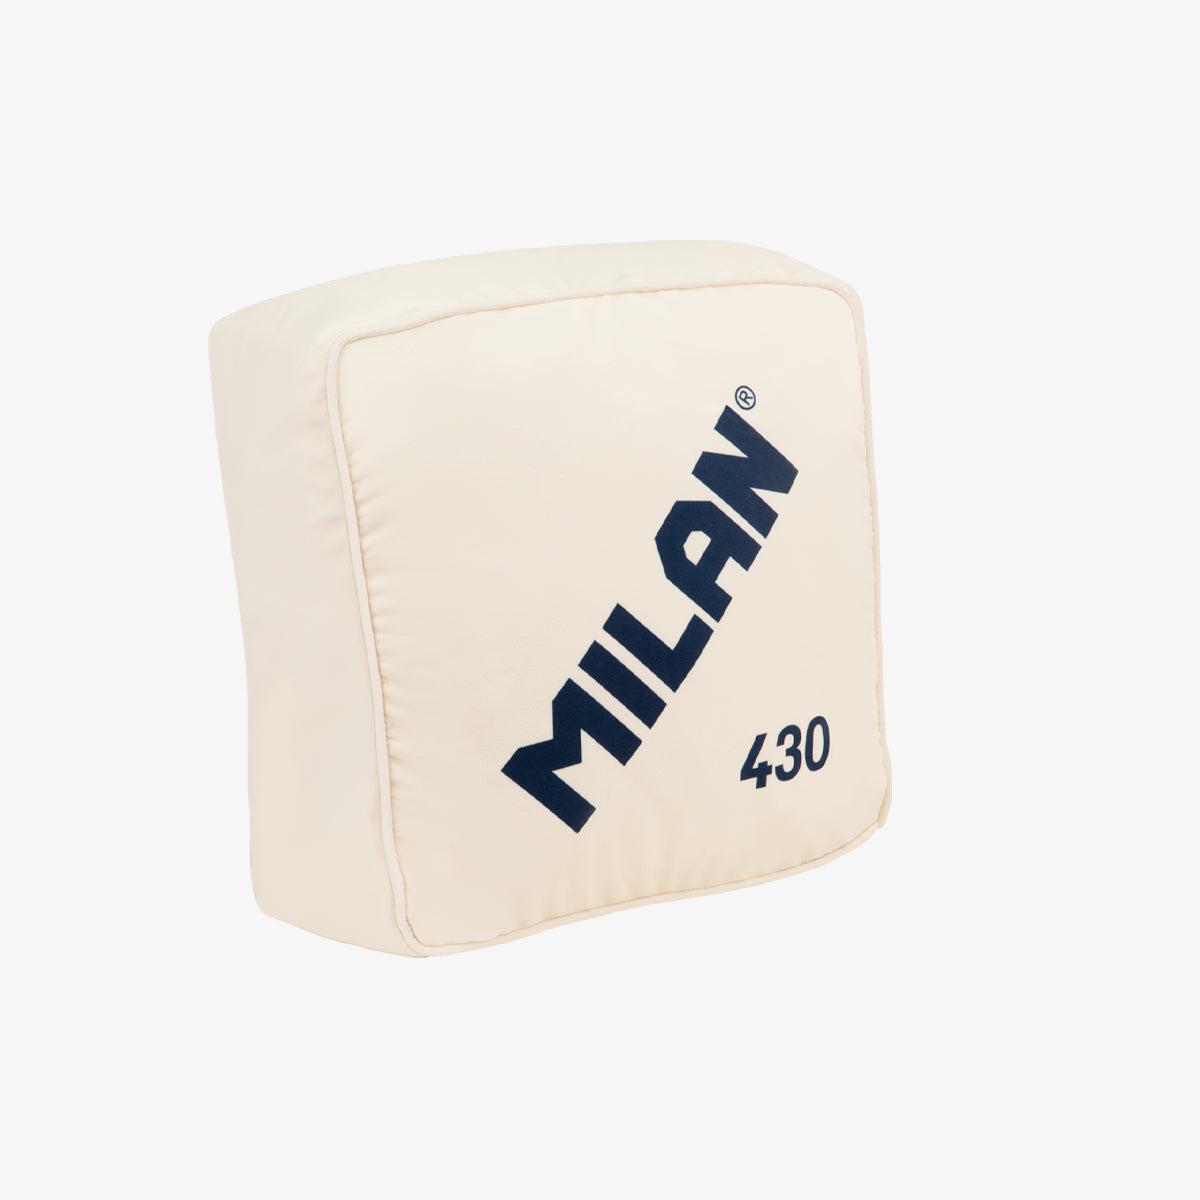 Cojín goma MILAN 430 since 1918